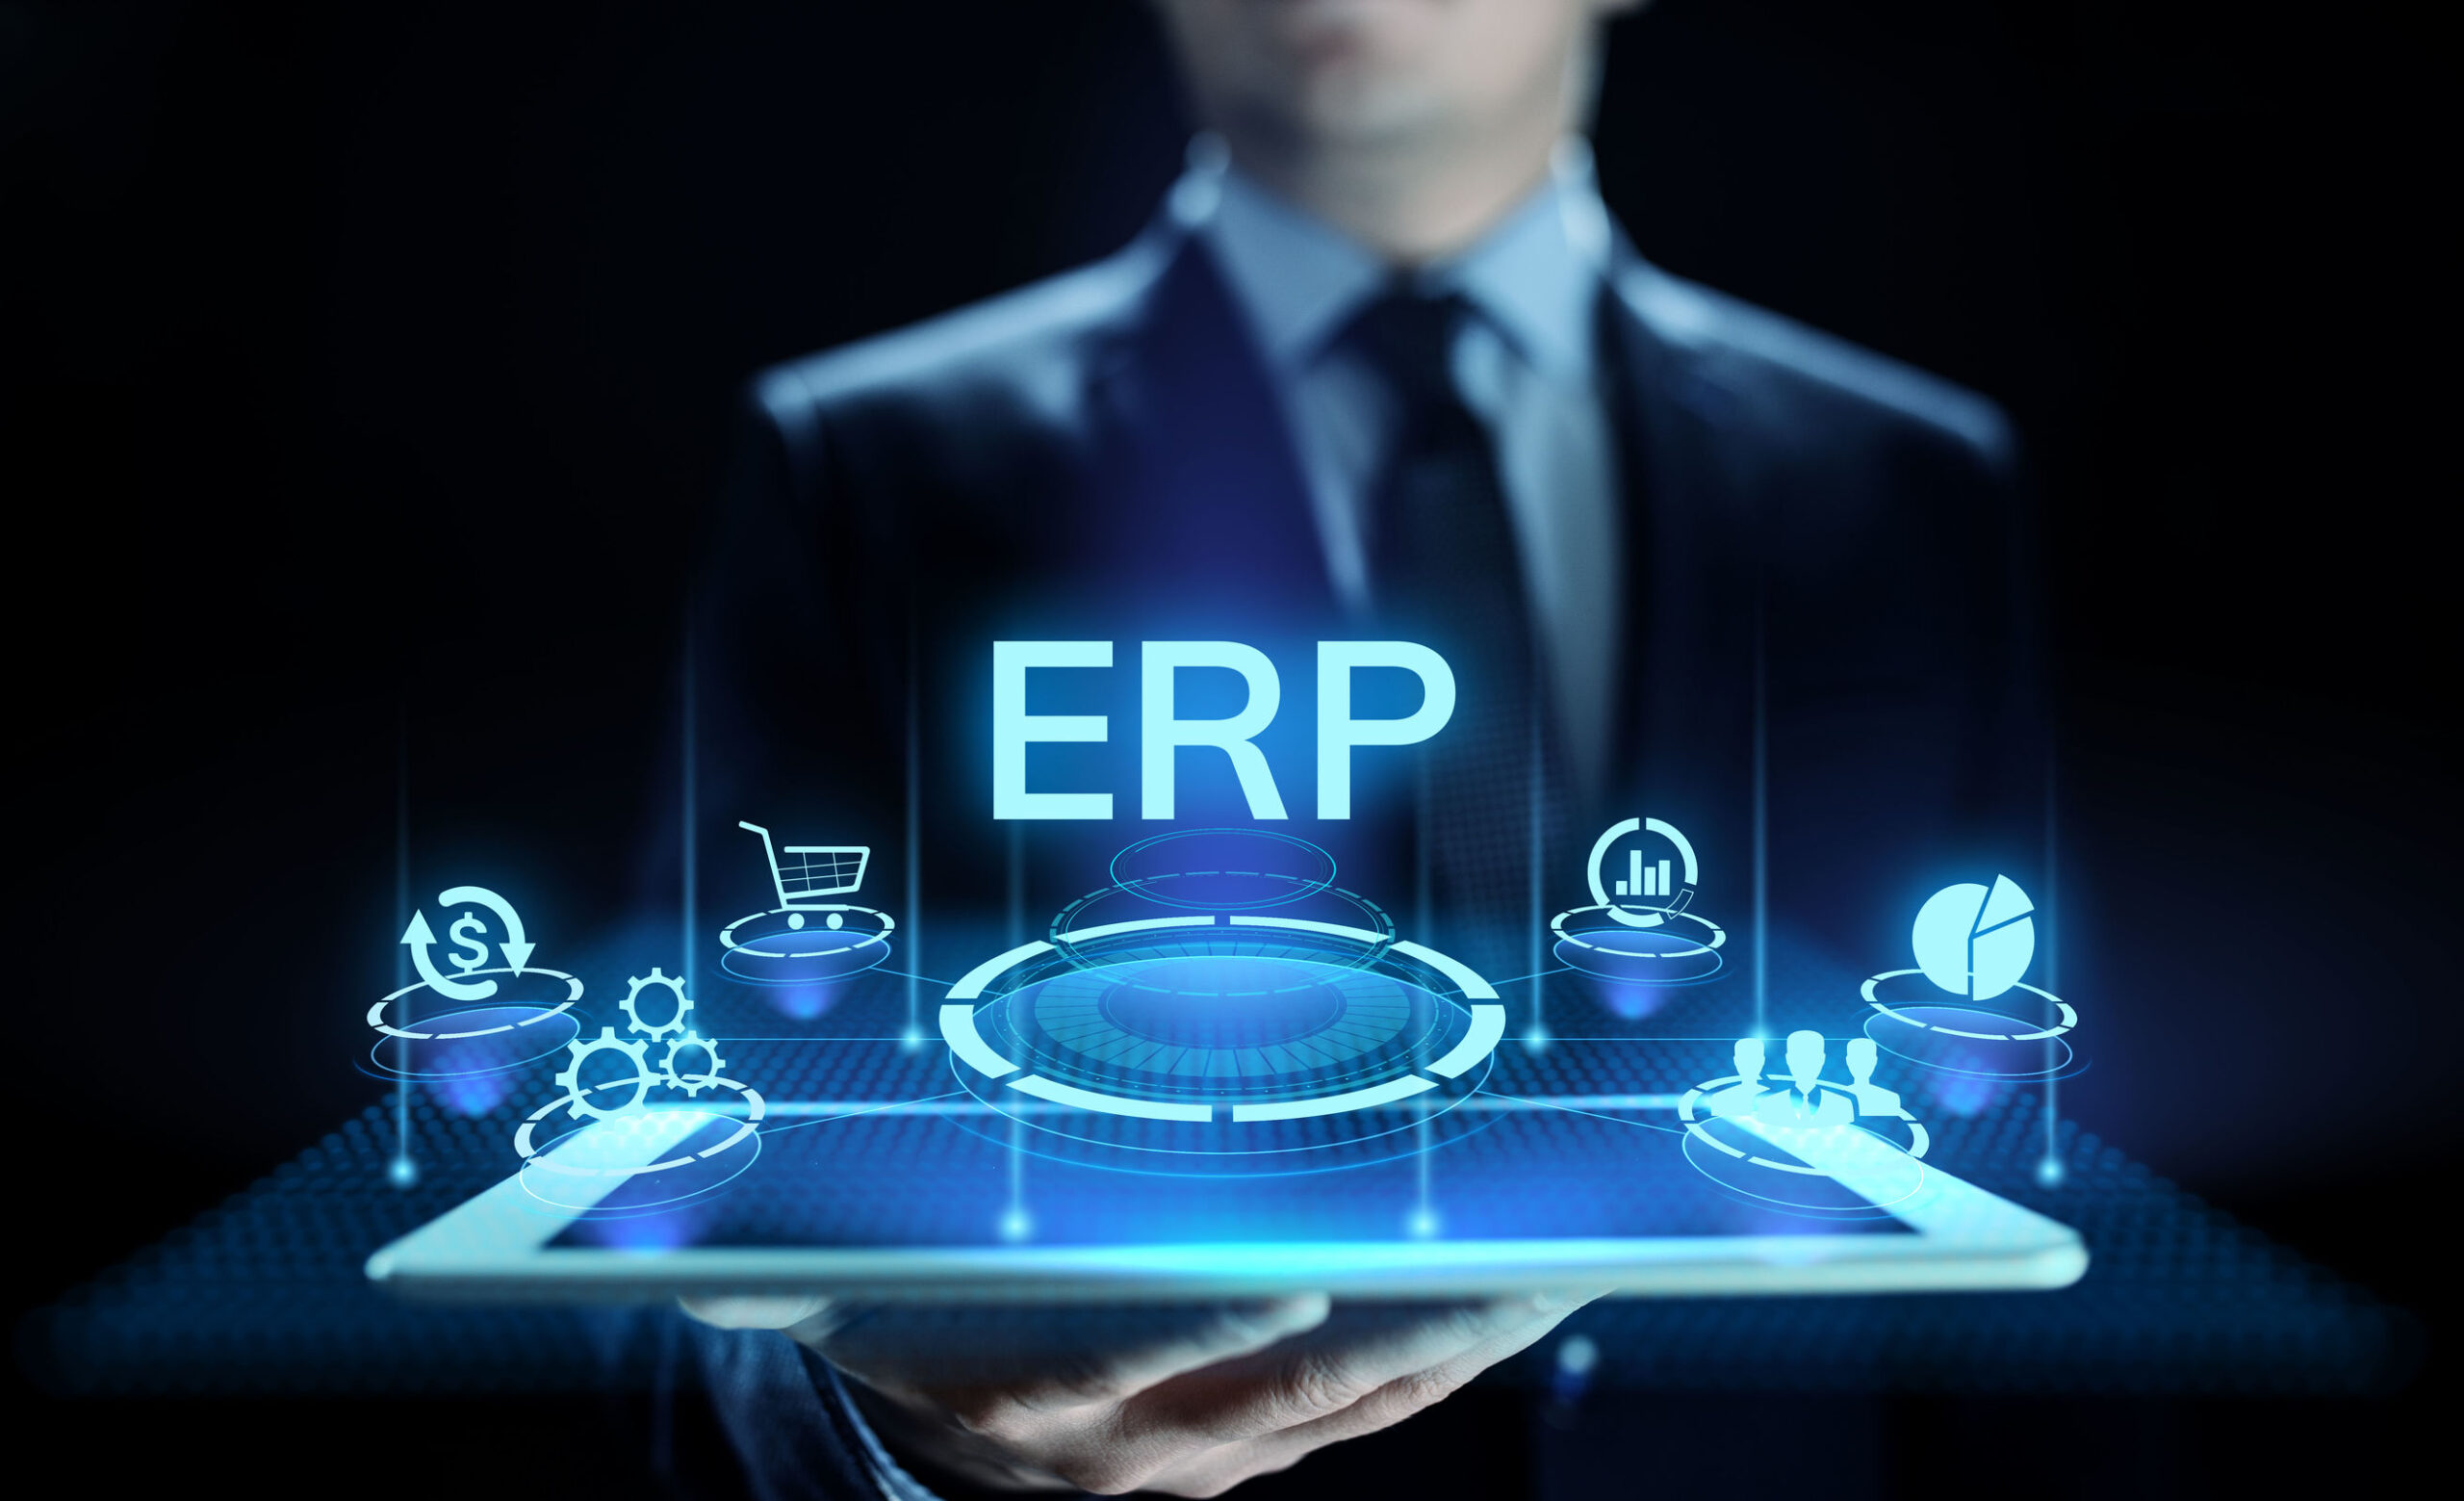 ERP fixed assets management software